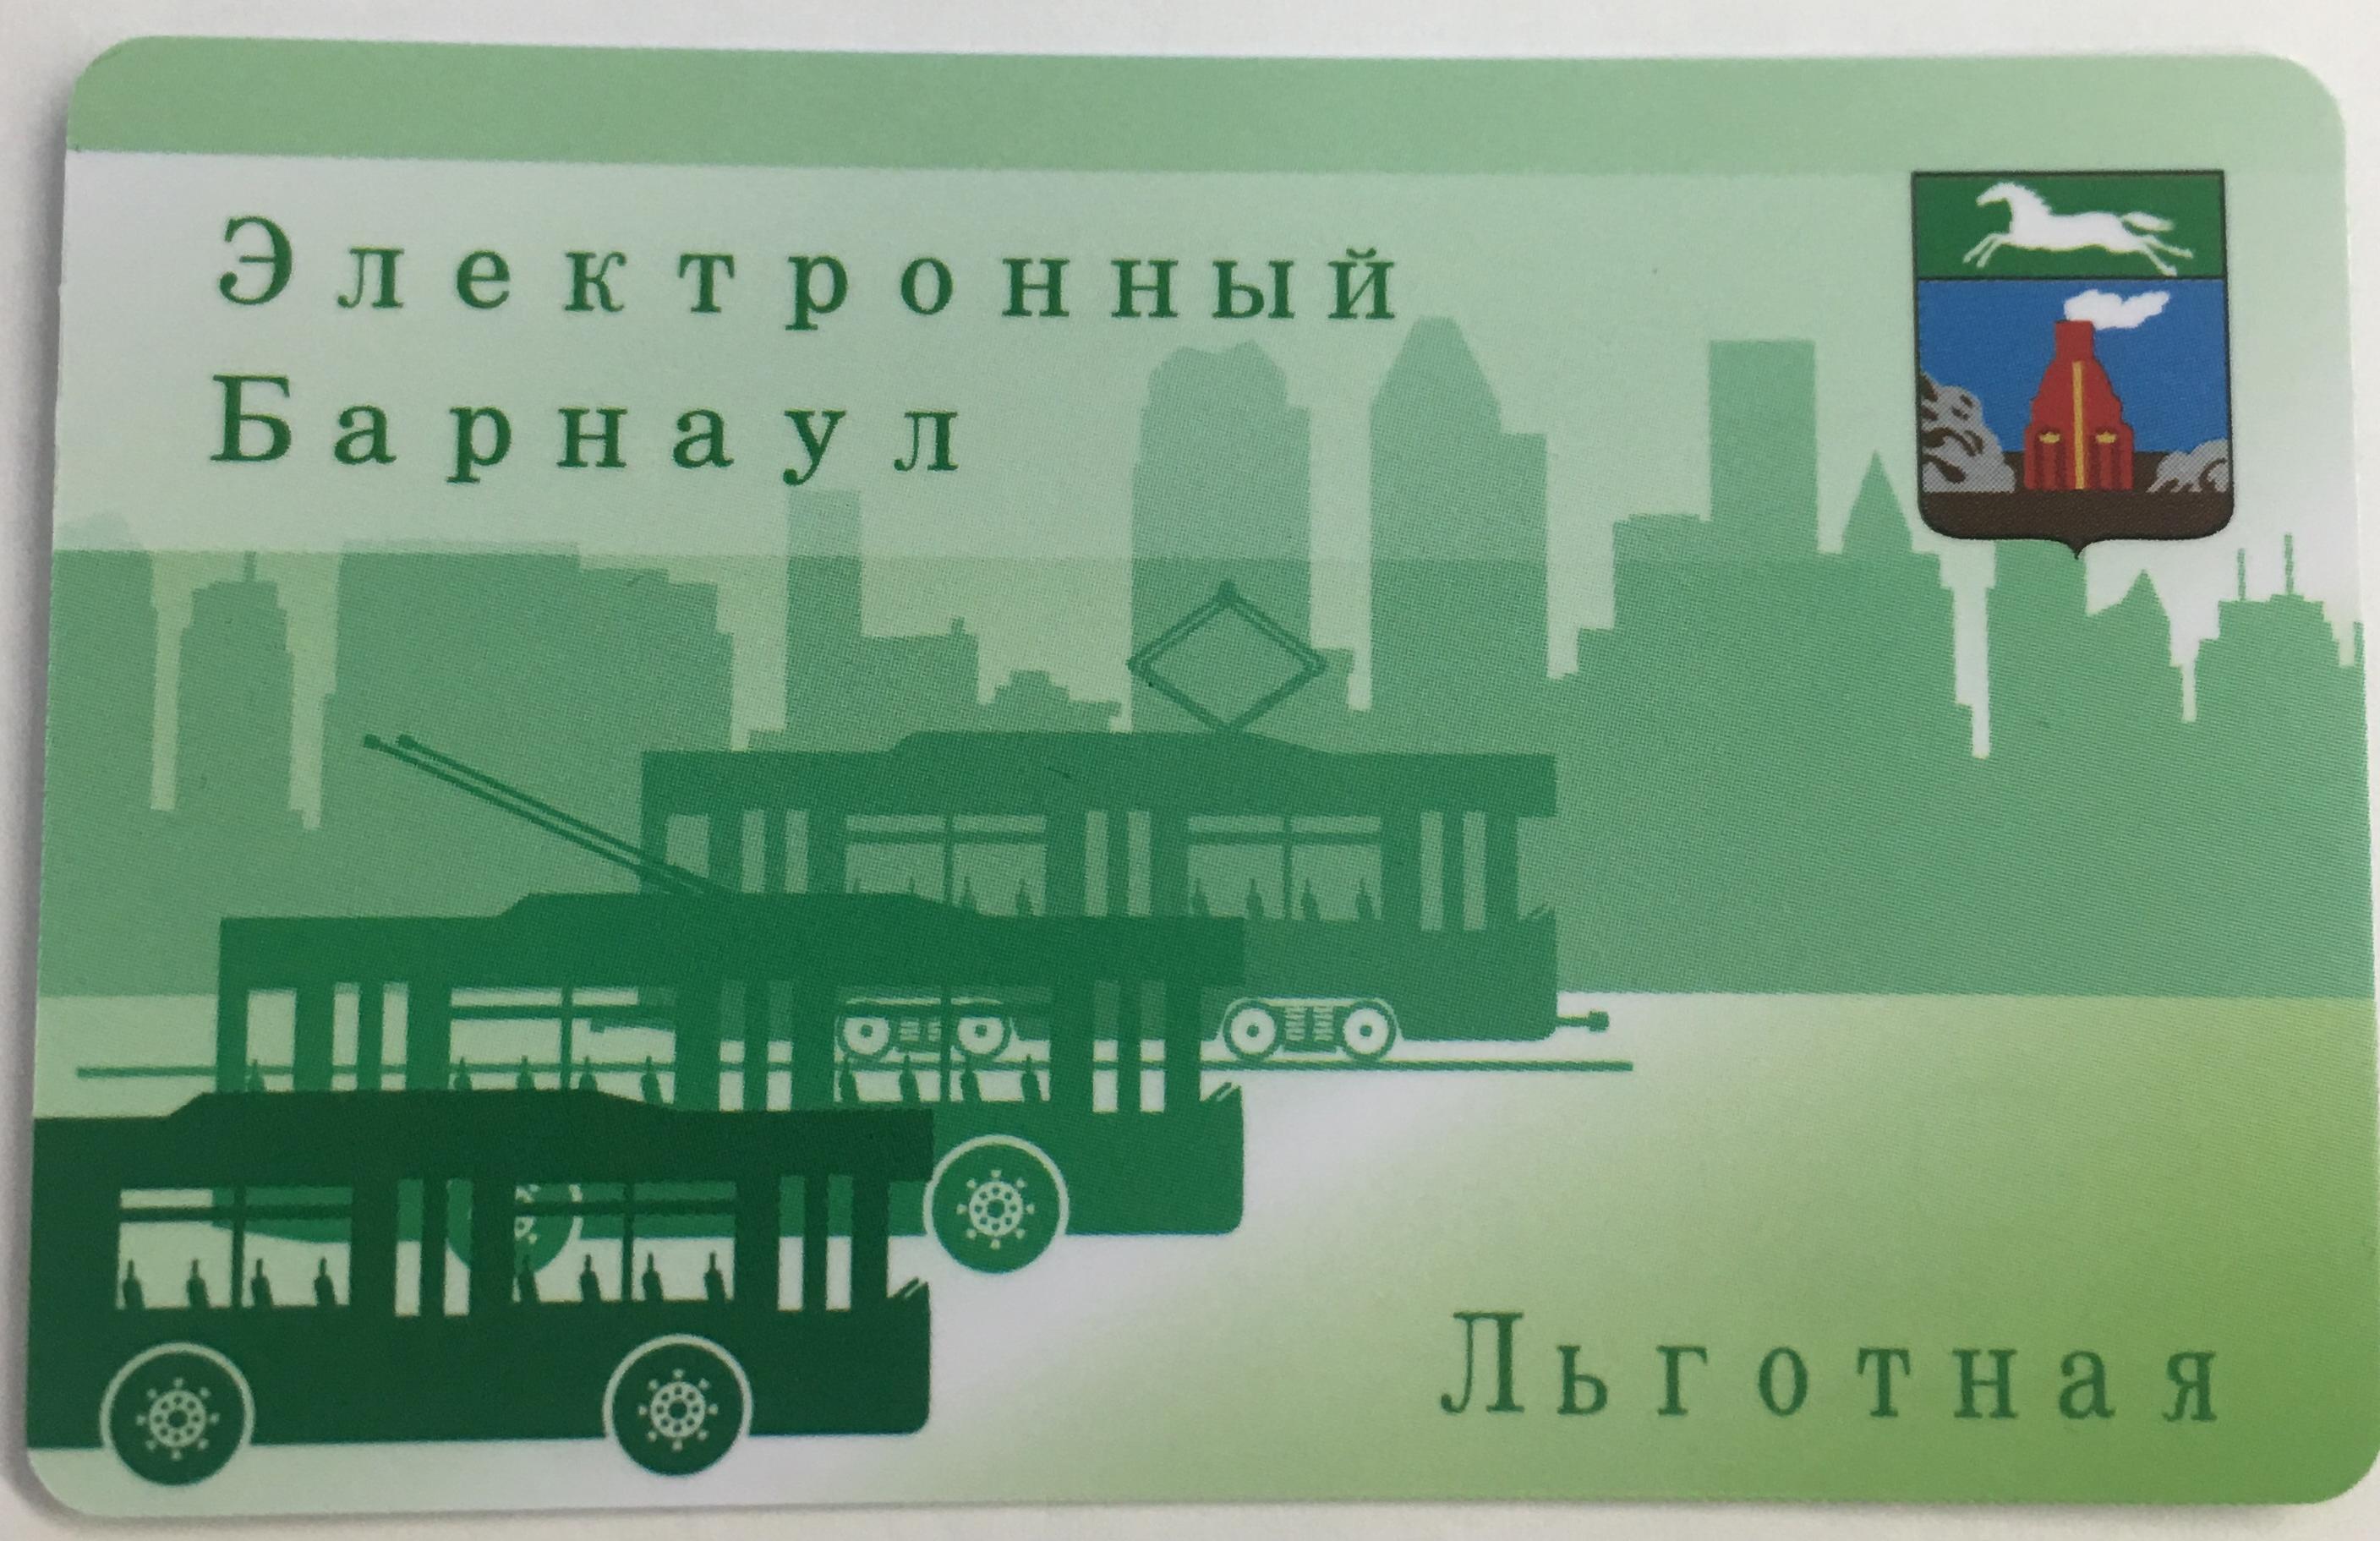 Сайт электронный барнаул. Транспортная карта Барнаул. Проездная карта Барнаул. Электронный проездной Барнаул. Студенческий проездной Барнаул.